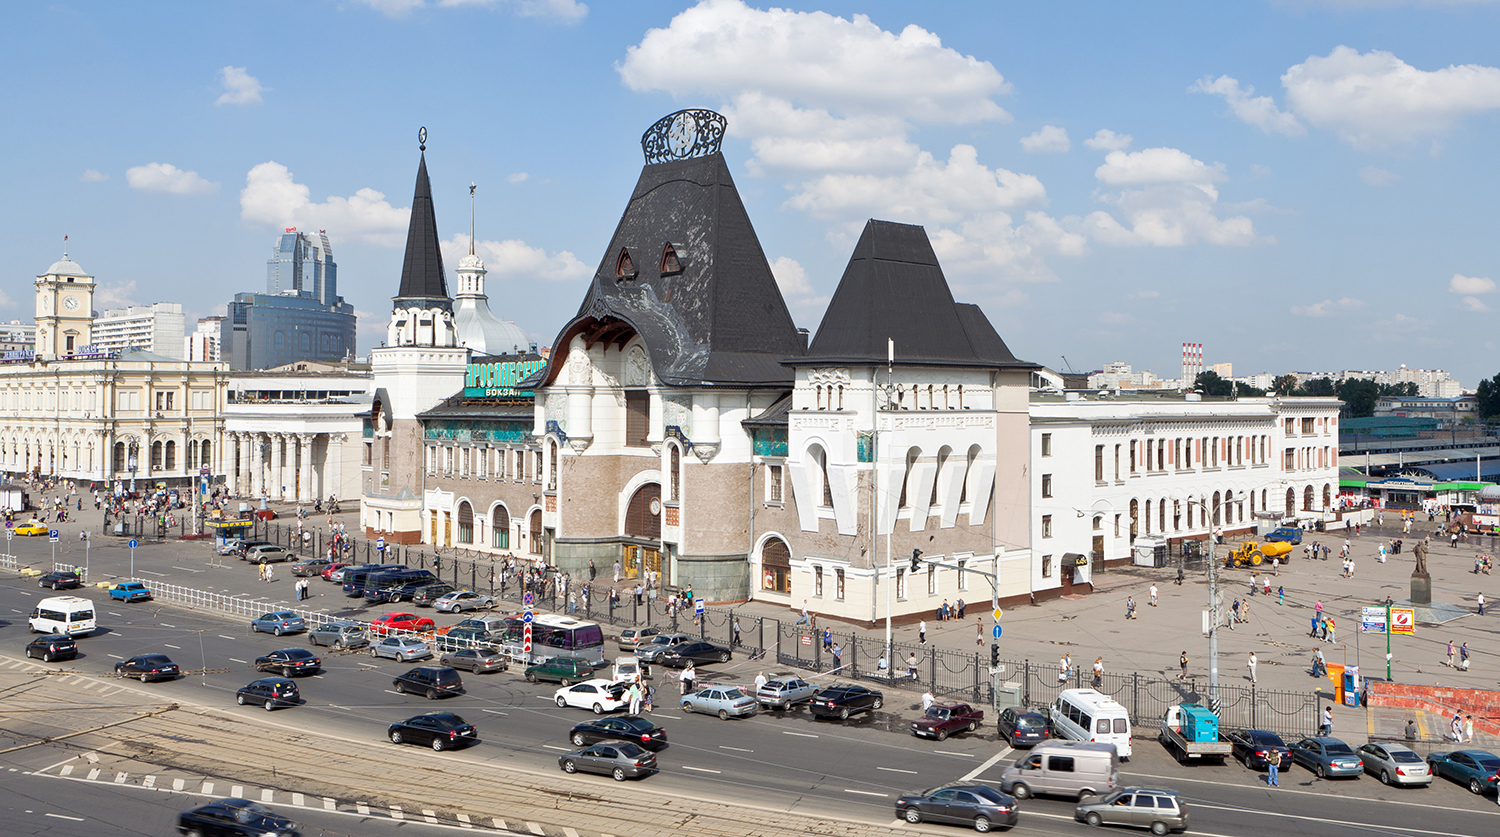 как выглядит ярославский вокзал в москве